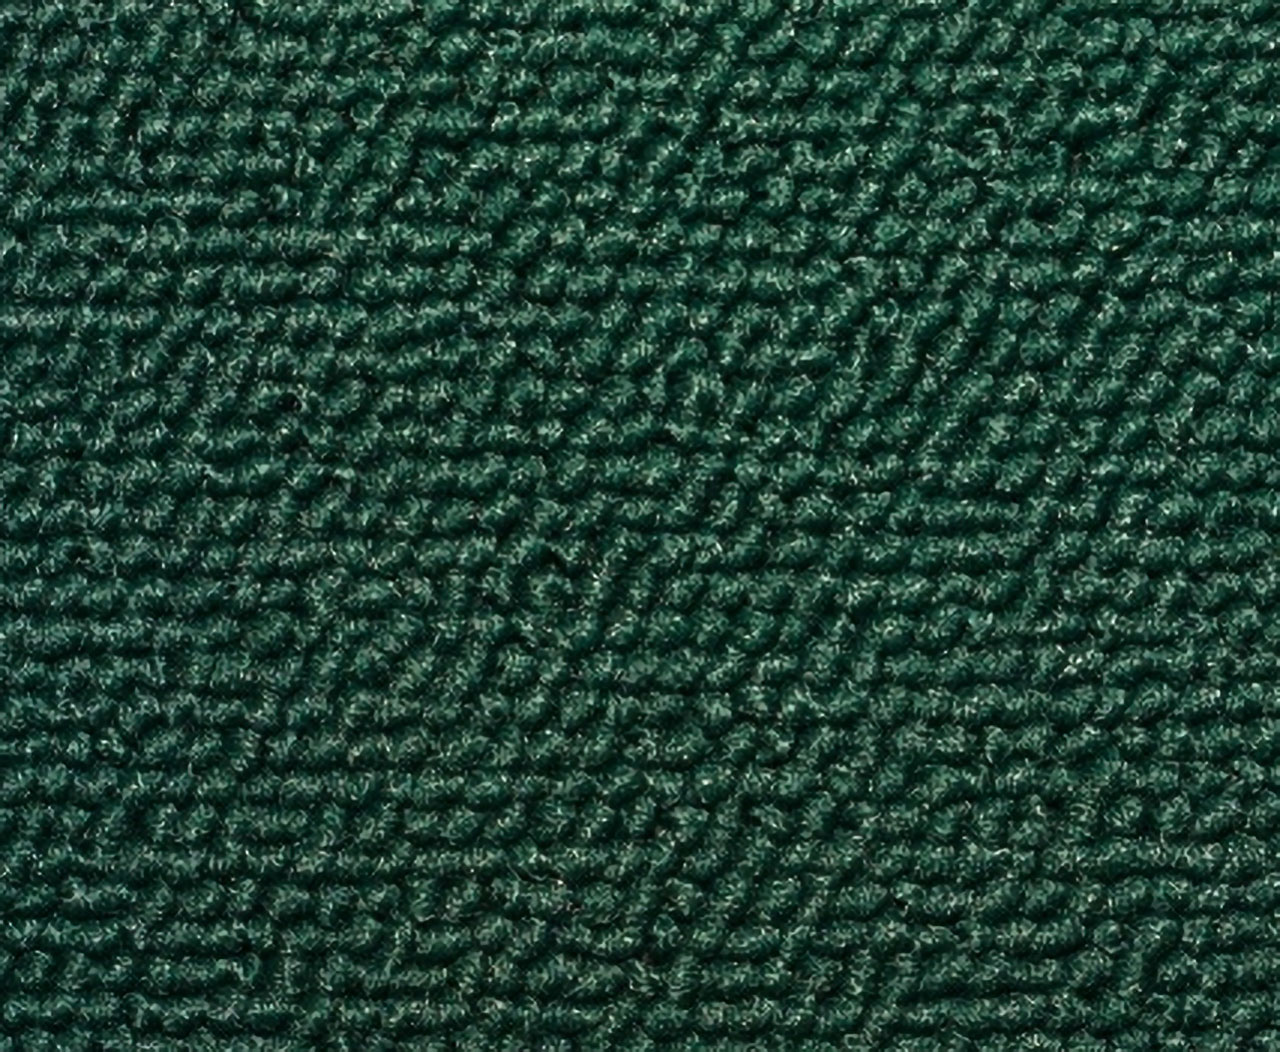 Holden Kingswood HQ Kingswood Ute Jan71-Sept72 16E Olive Green Carpet (Image 1 of 1)